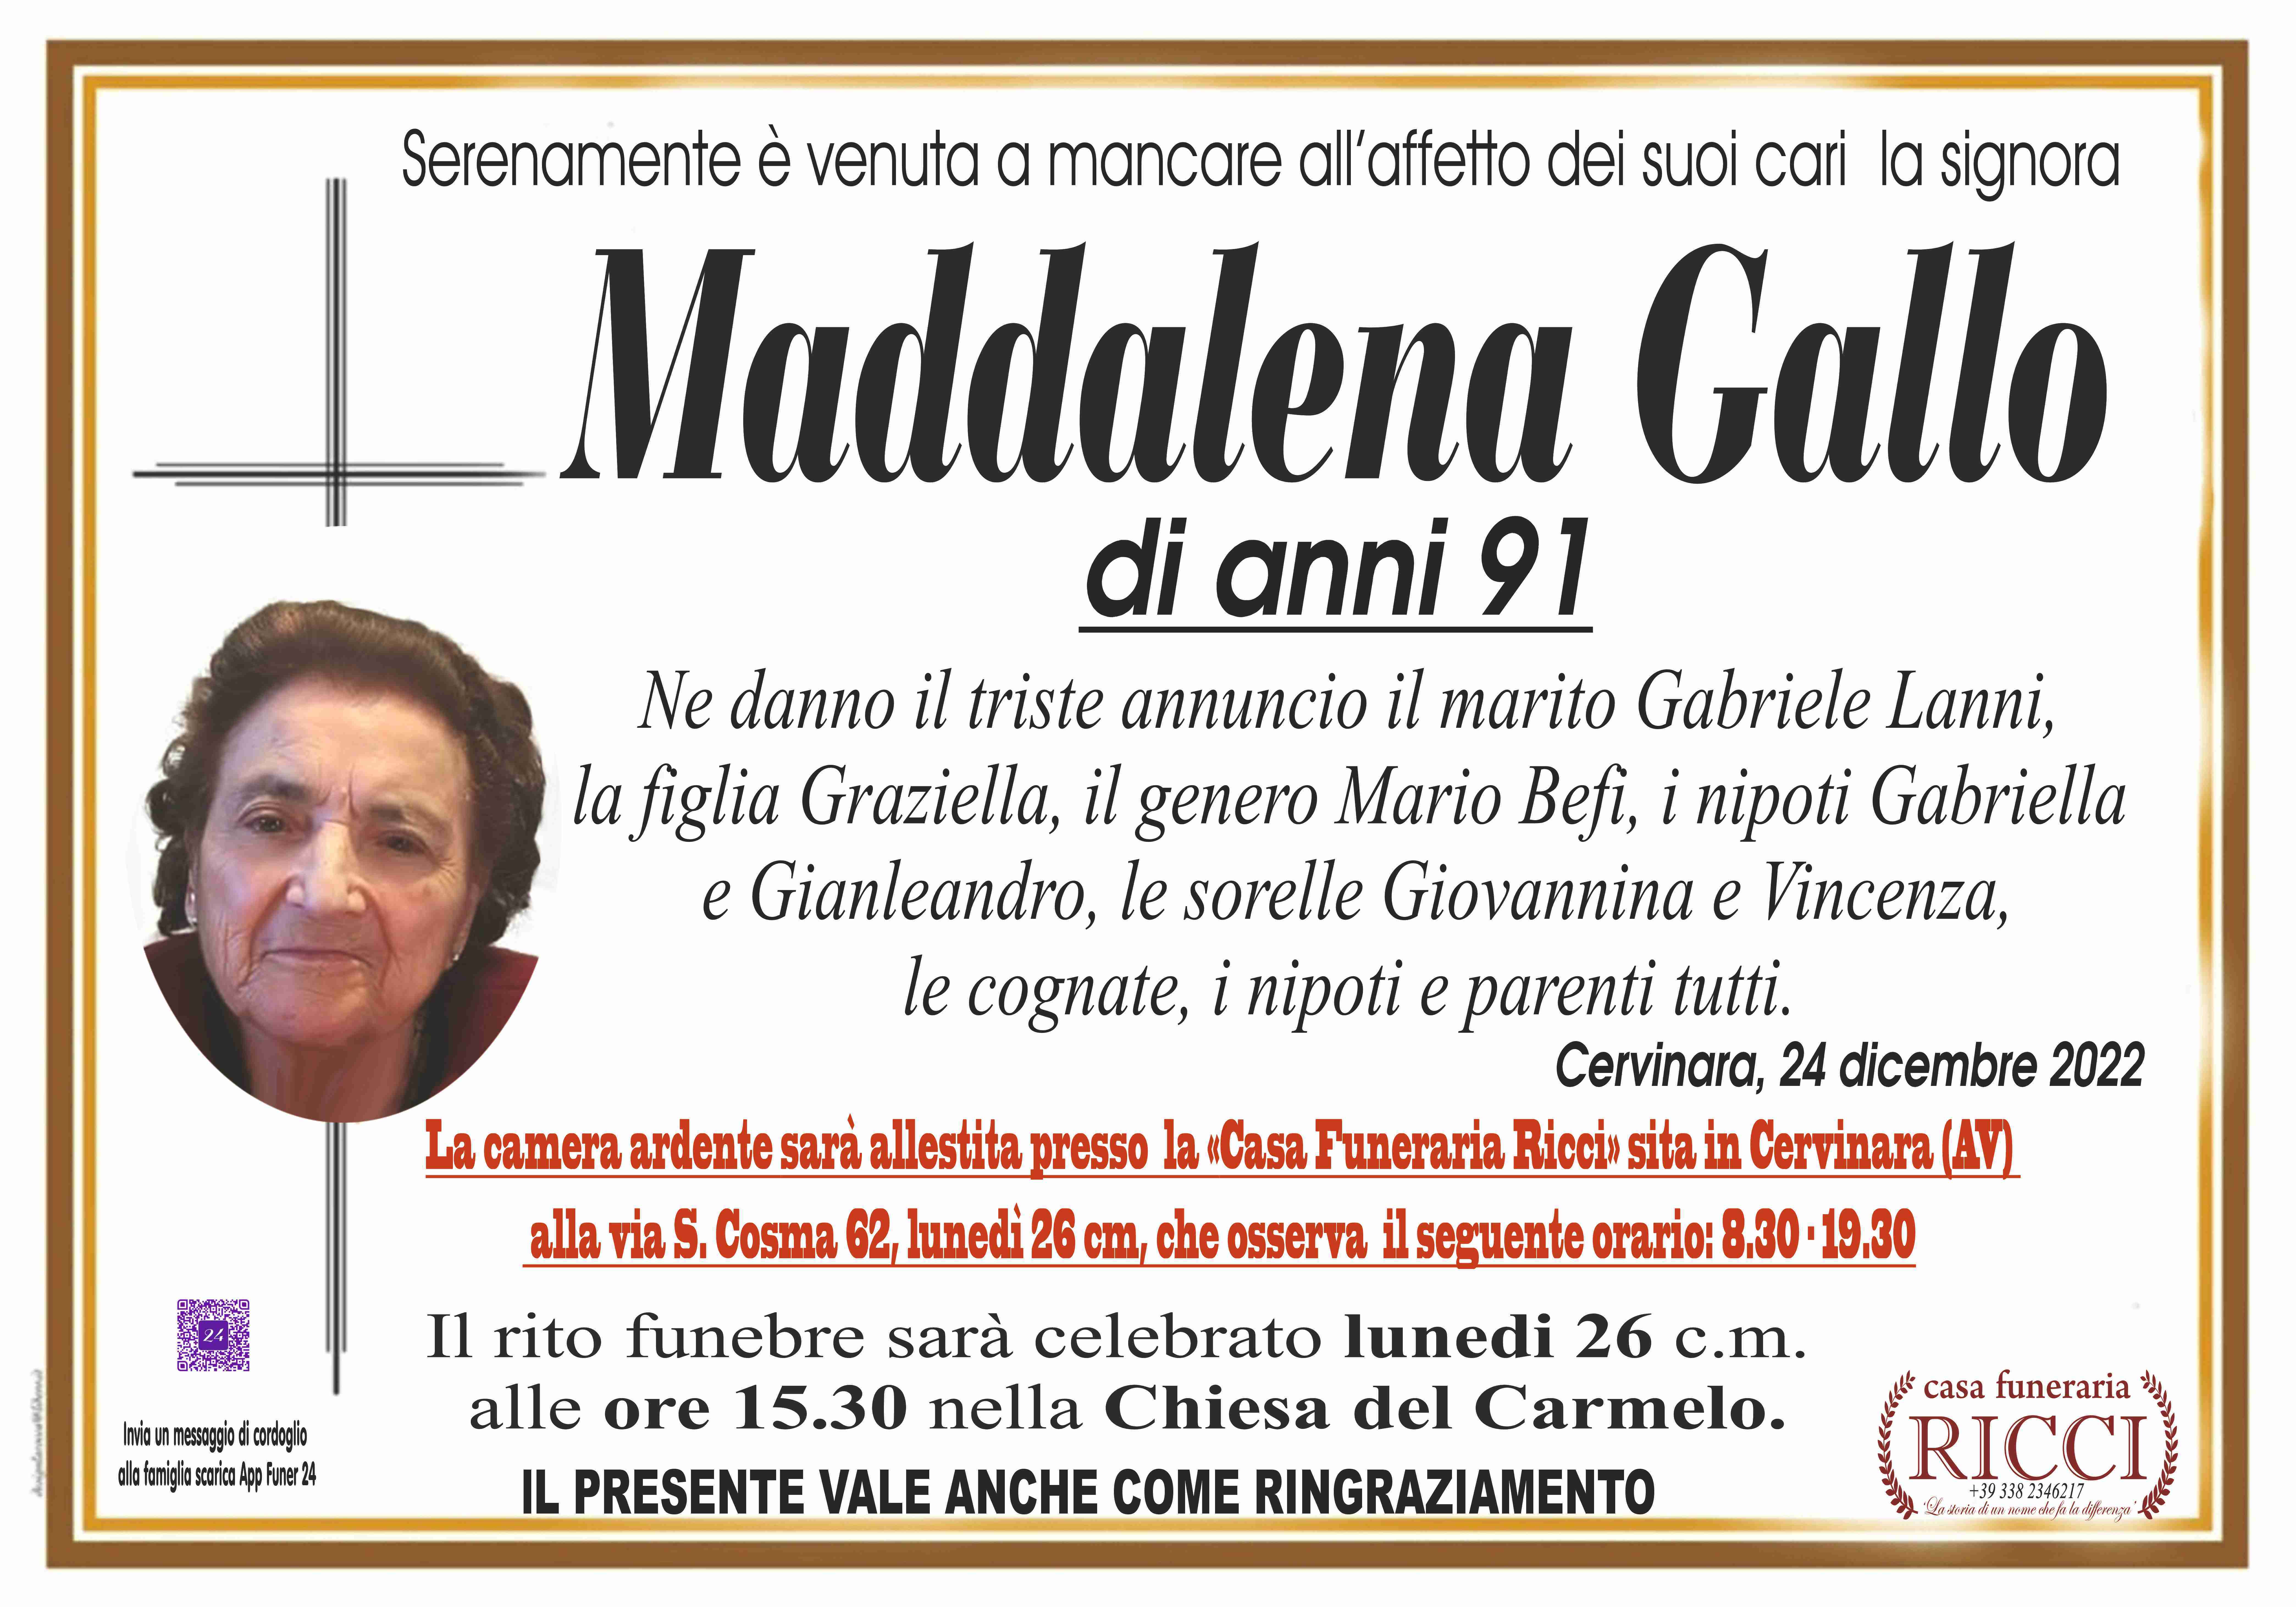 Maddalena Gallo